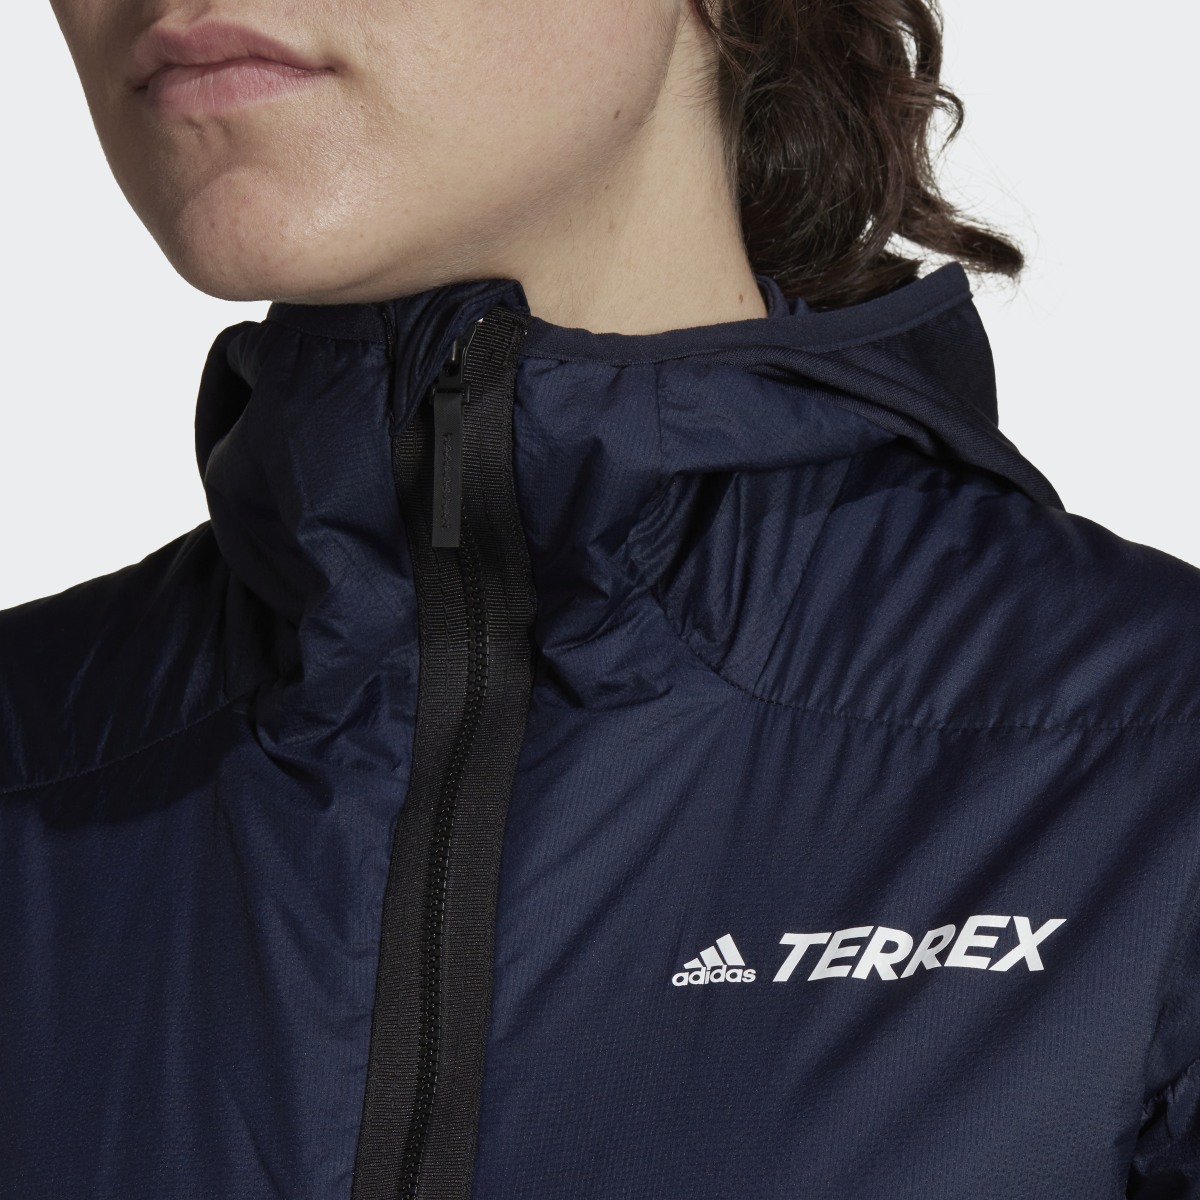 Adidas Terrex Skyclimb Gore Hybrid Insulation Ski Touring Jacket. 8